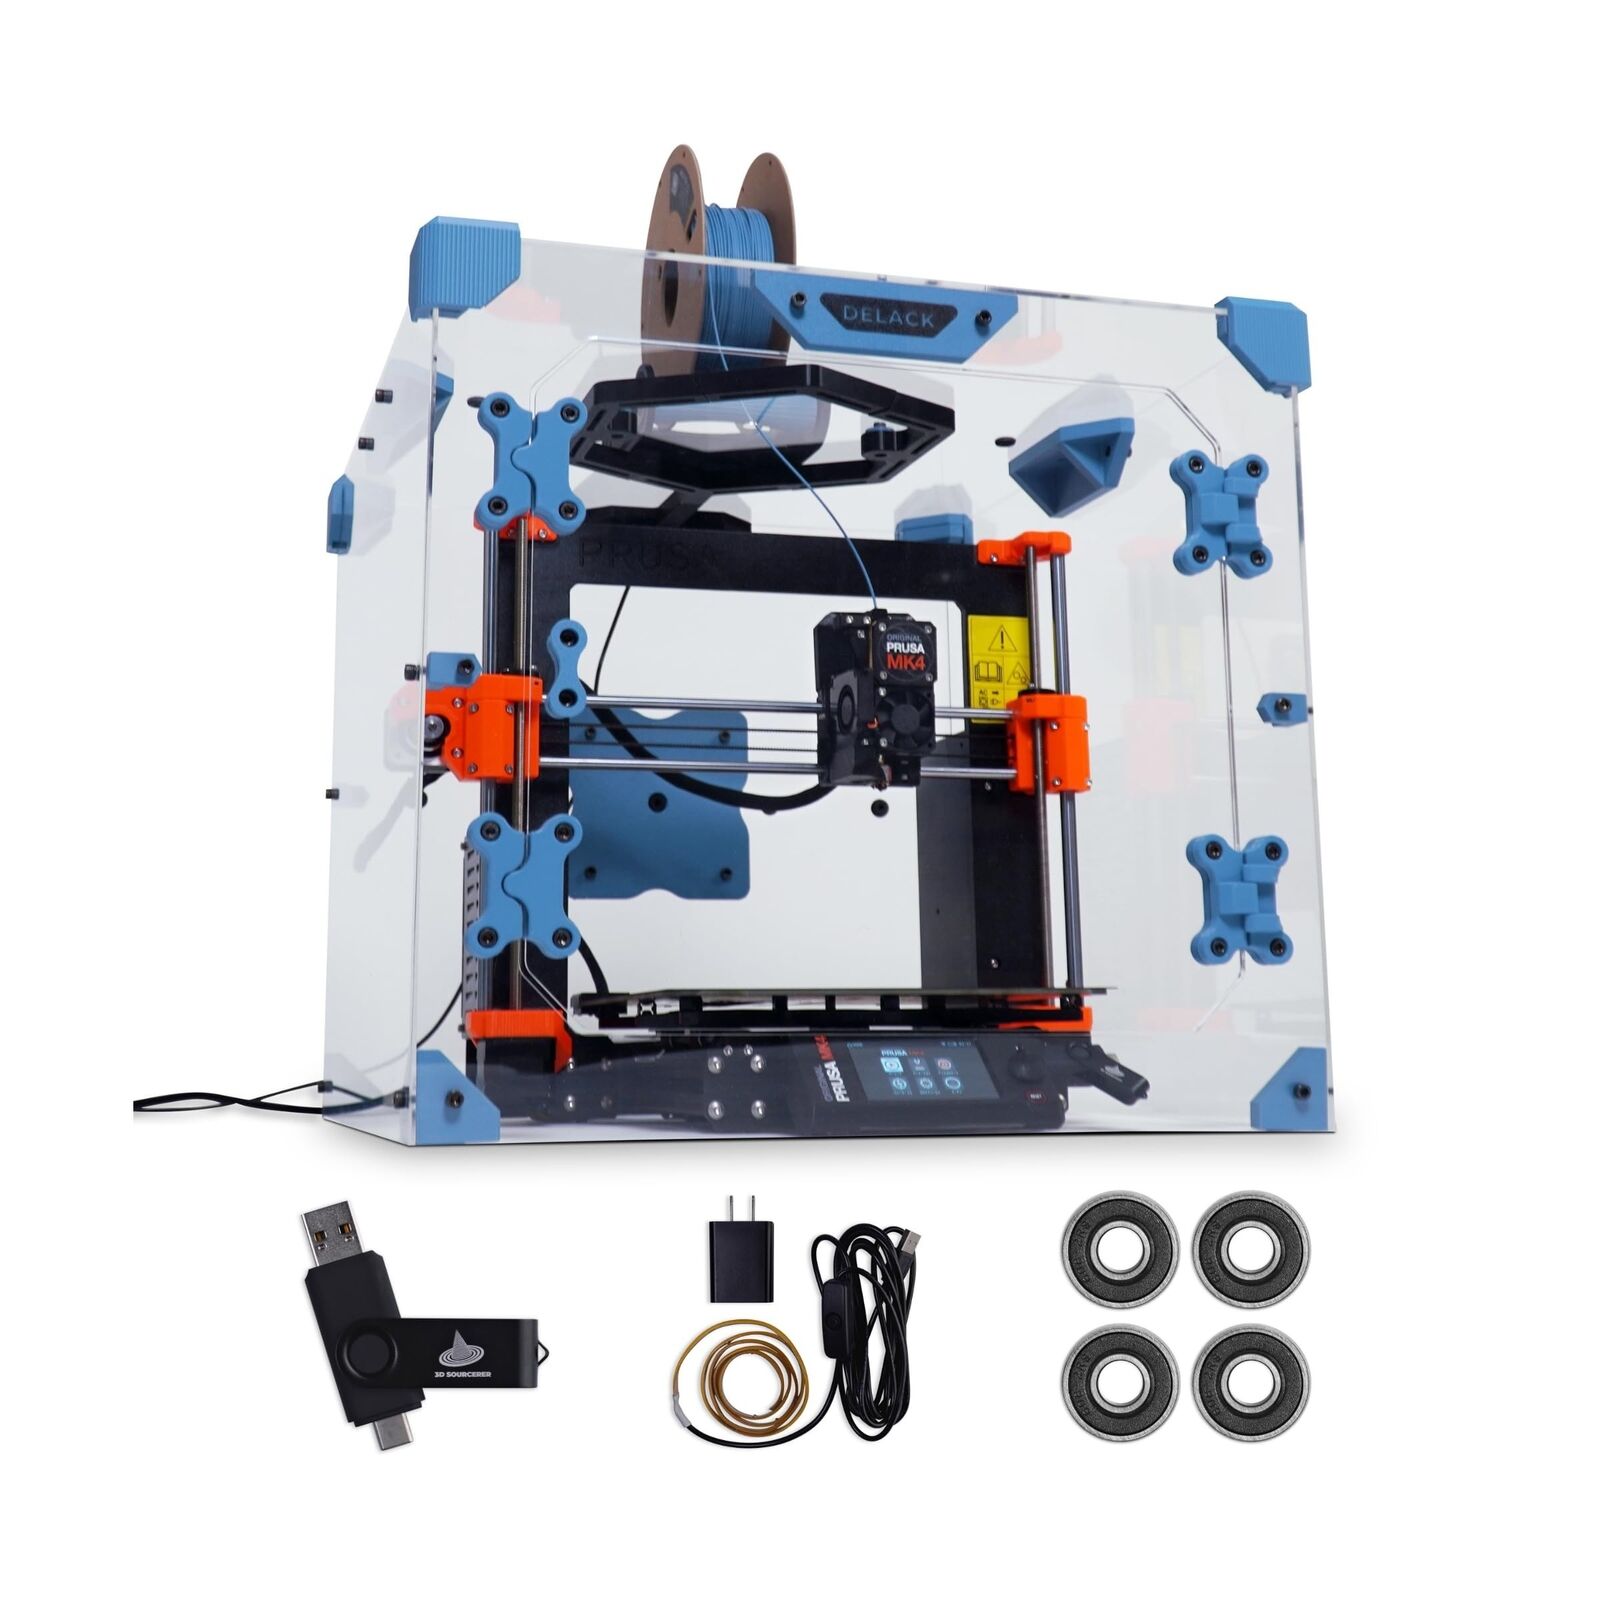 DELACK 3D Printer Enclosure Kit with LED Light | Made for Prusa MK4, Prusa Mi...